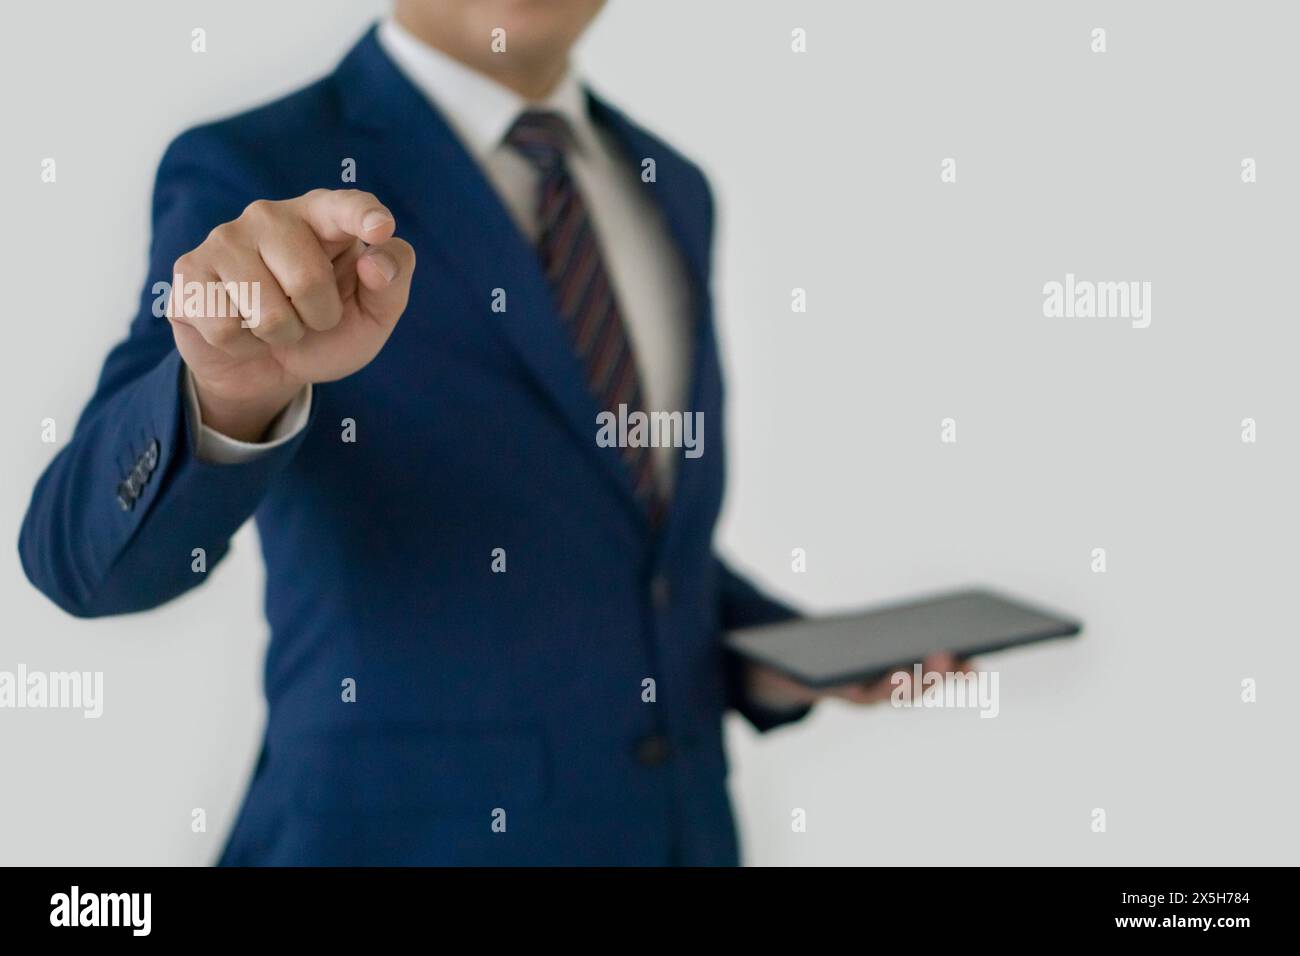 Ein Geschäftsmann in elegantem blauen Anzug und Krawatte, der ein Tablet hält, auf die Kamera zeigt und den Eindruck erweckt, als würde er einen präsentieren oder betonen Stockfoto